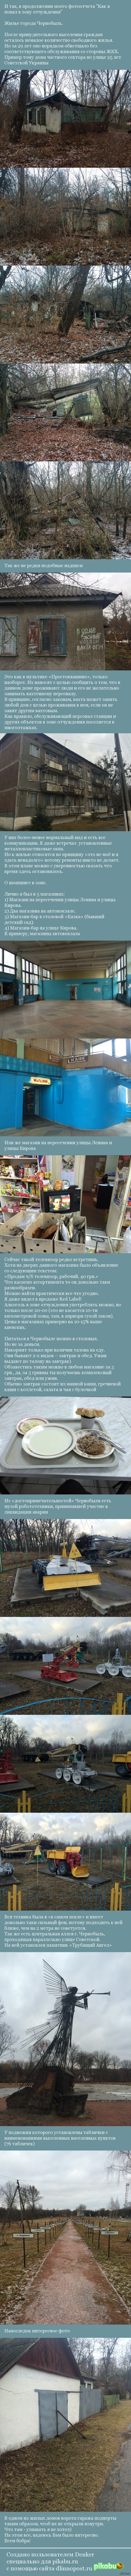 .  ,    <a href="http://pikabu.ru/story/chernobyil_chast_pervaya_vstupitelnaya_3139454">http://pikabu.ru/story/_3139454</a>